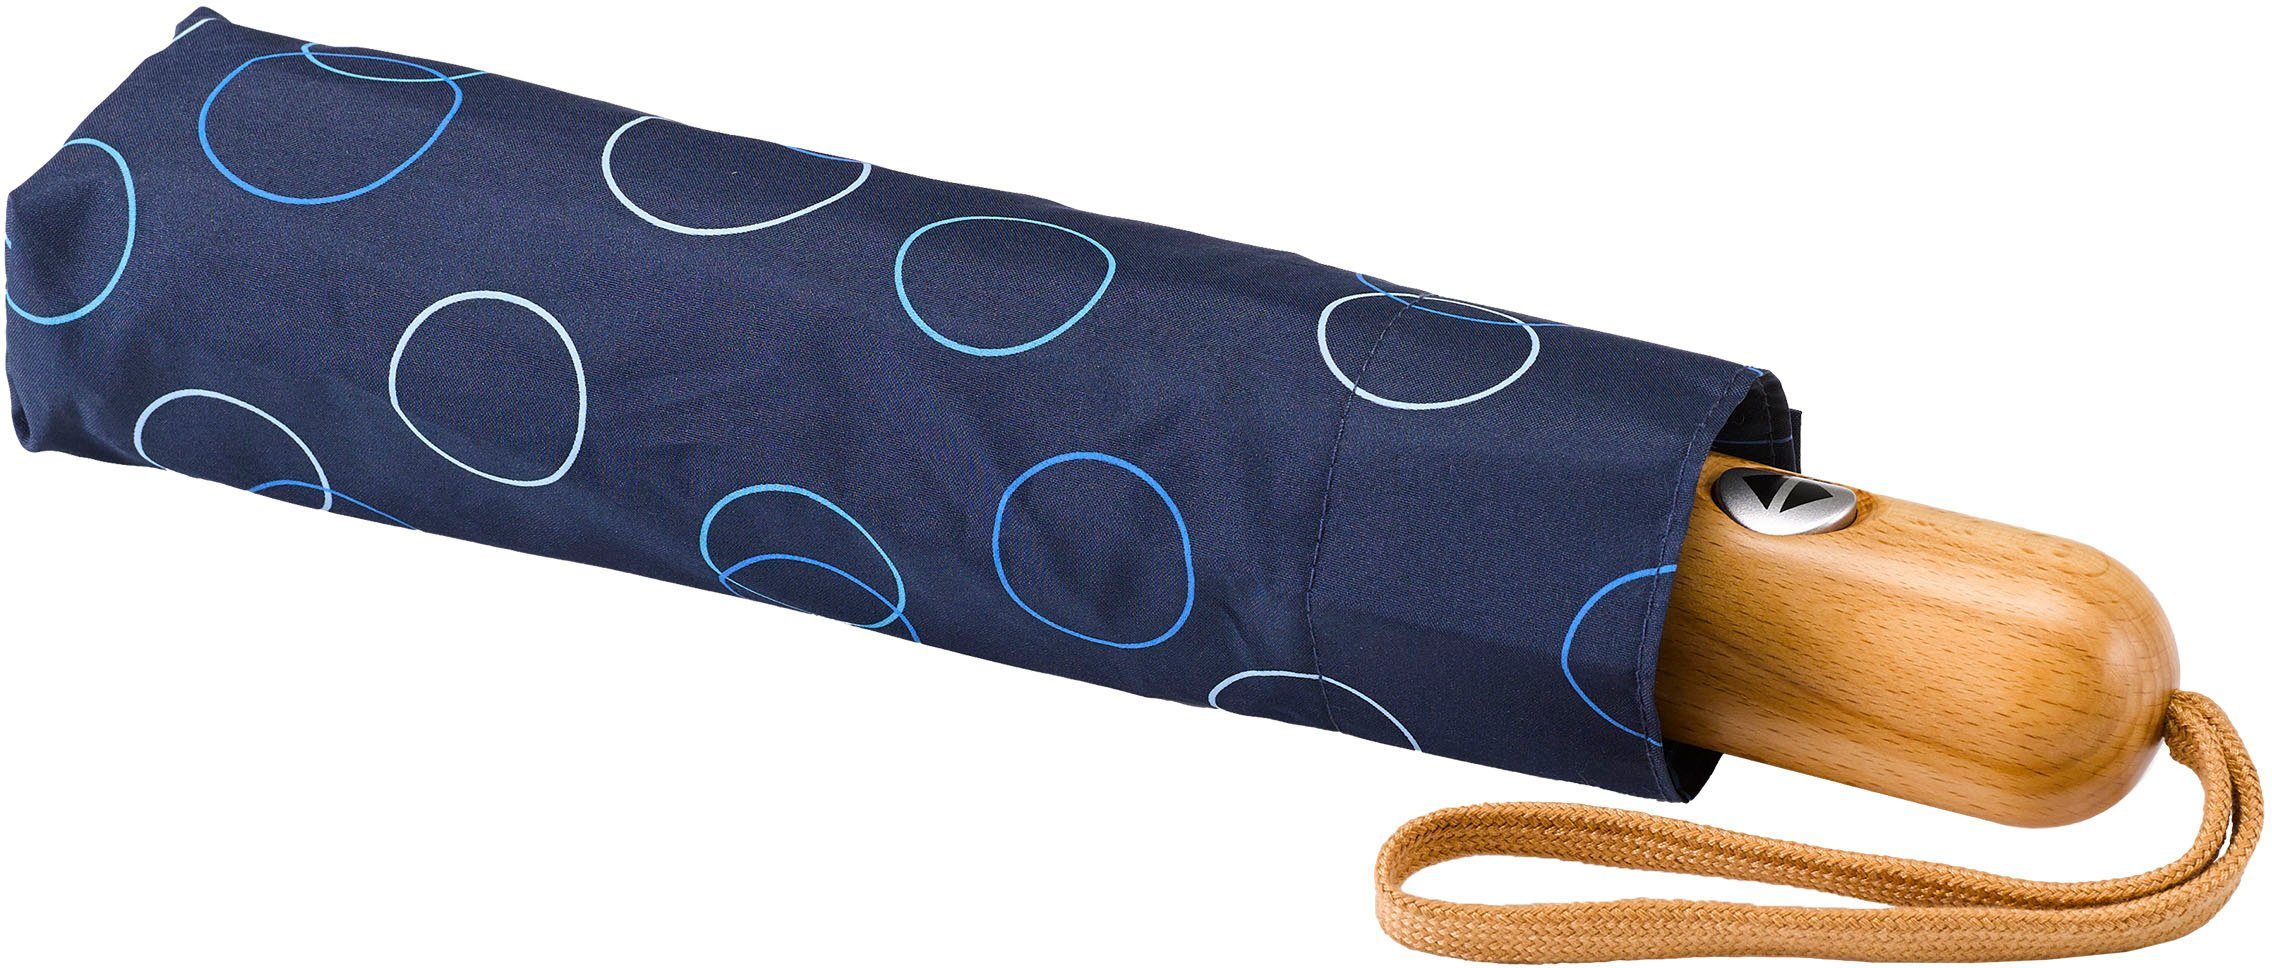 Kreise marine, Taschenregenschirm EuroSCHIRM® blau Umwelt-Taschenschirm,